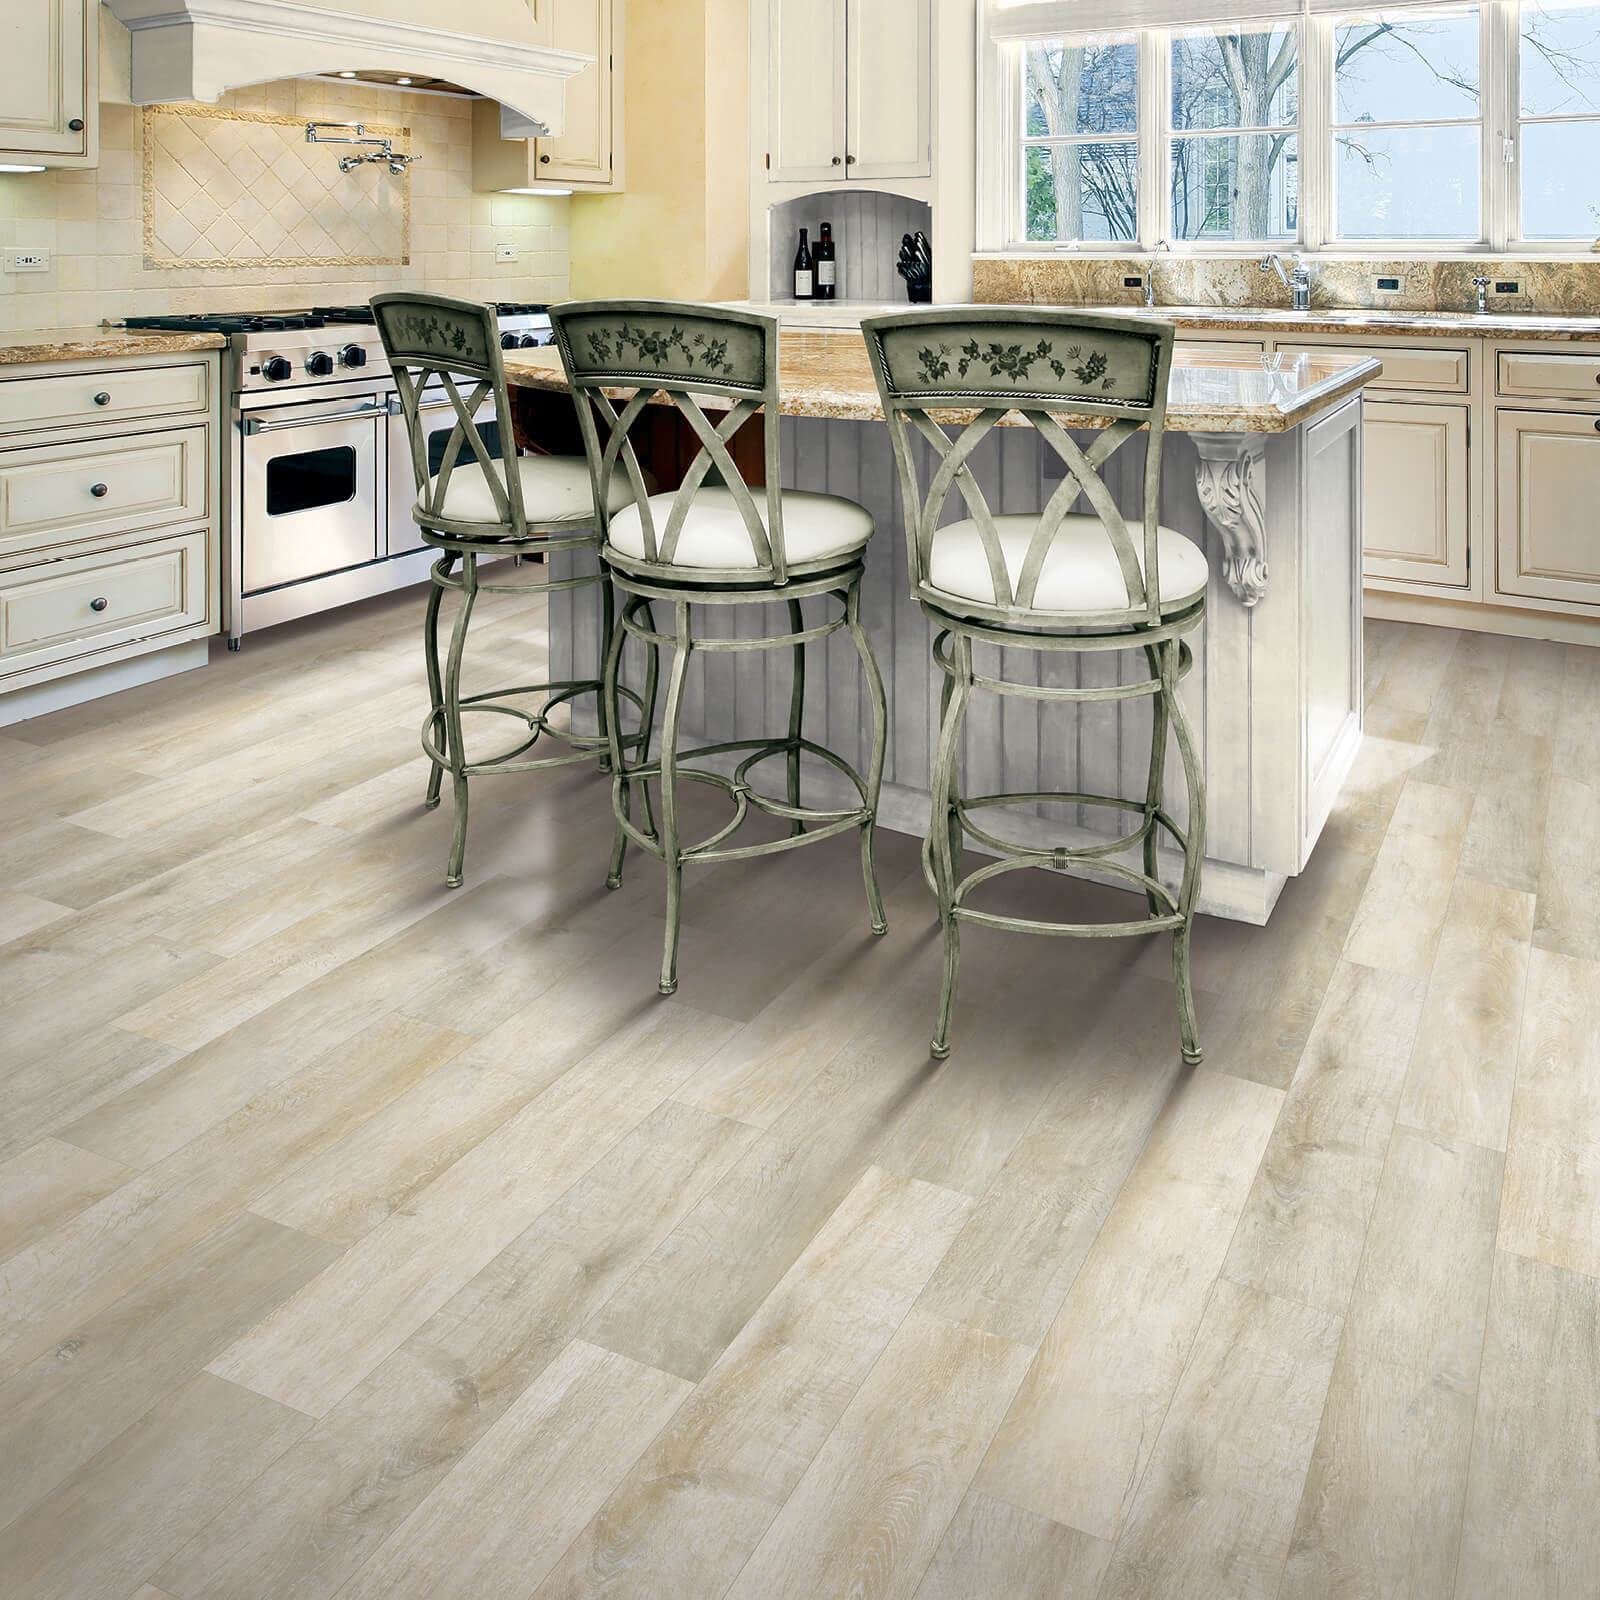 Luxury Laminate Flooring In Kitchen | IQ Floors